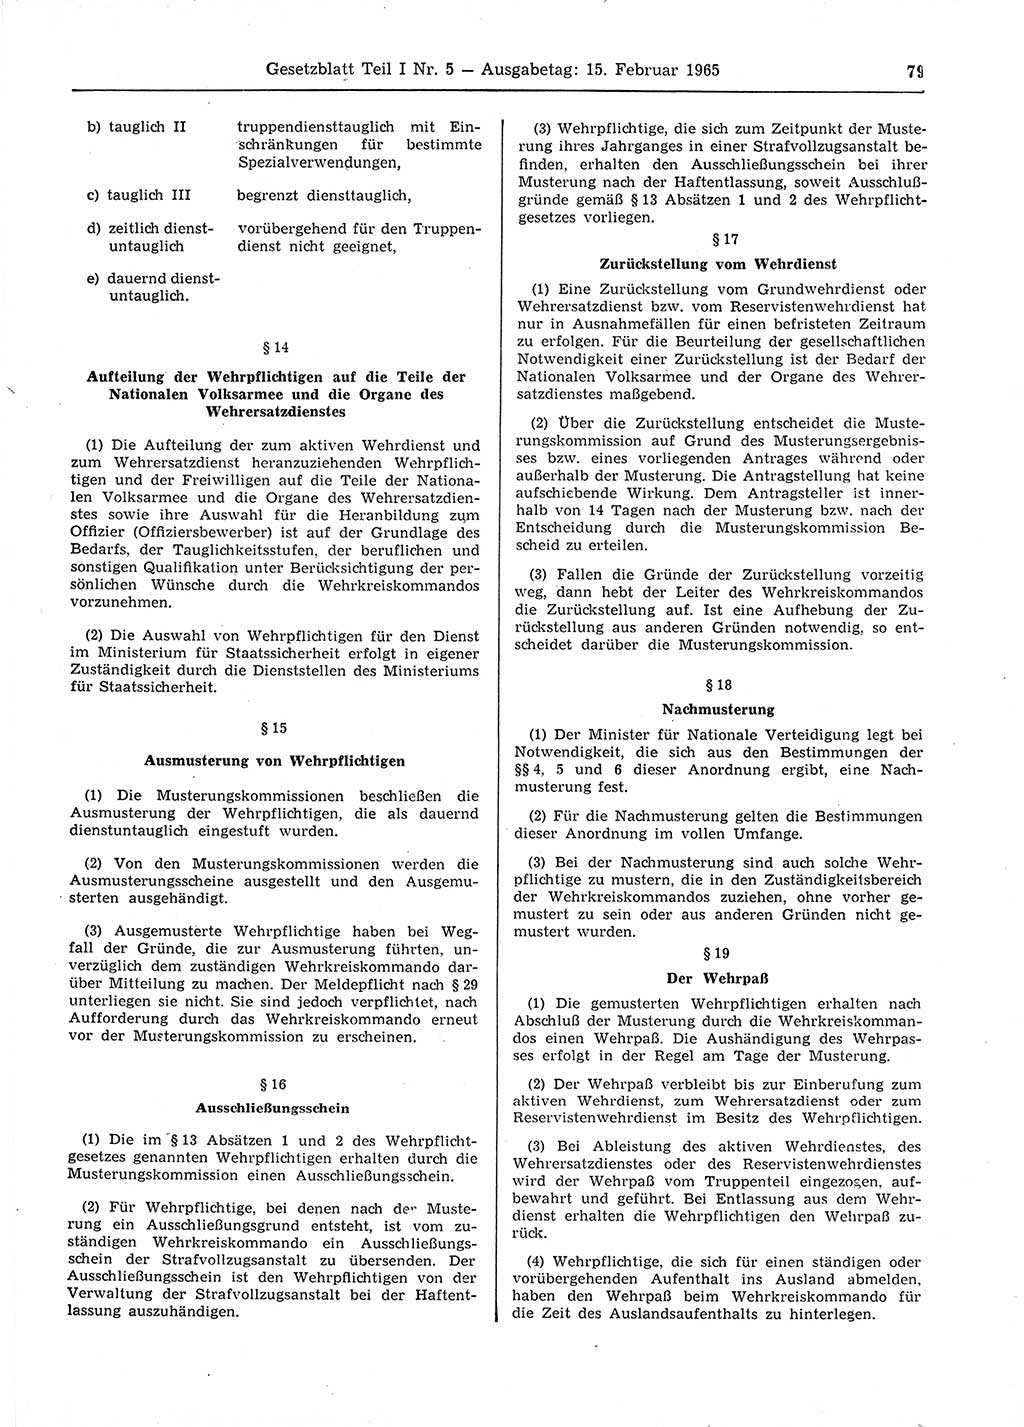 Gesetzblatt (GBl.) der Deutschen Demokratischen Republik (DDR) Teil Ⅰ 1965, Seite 79 (GBl. DDR Ⅰ 1965, S. 79)